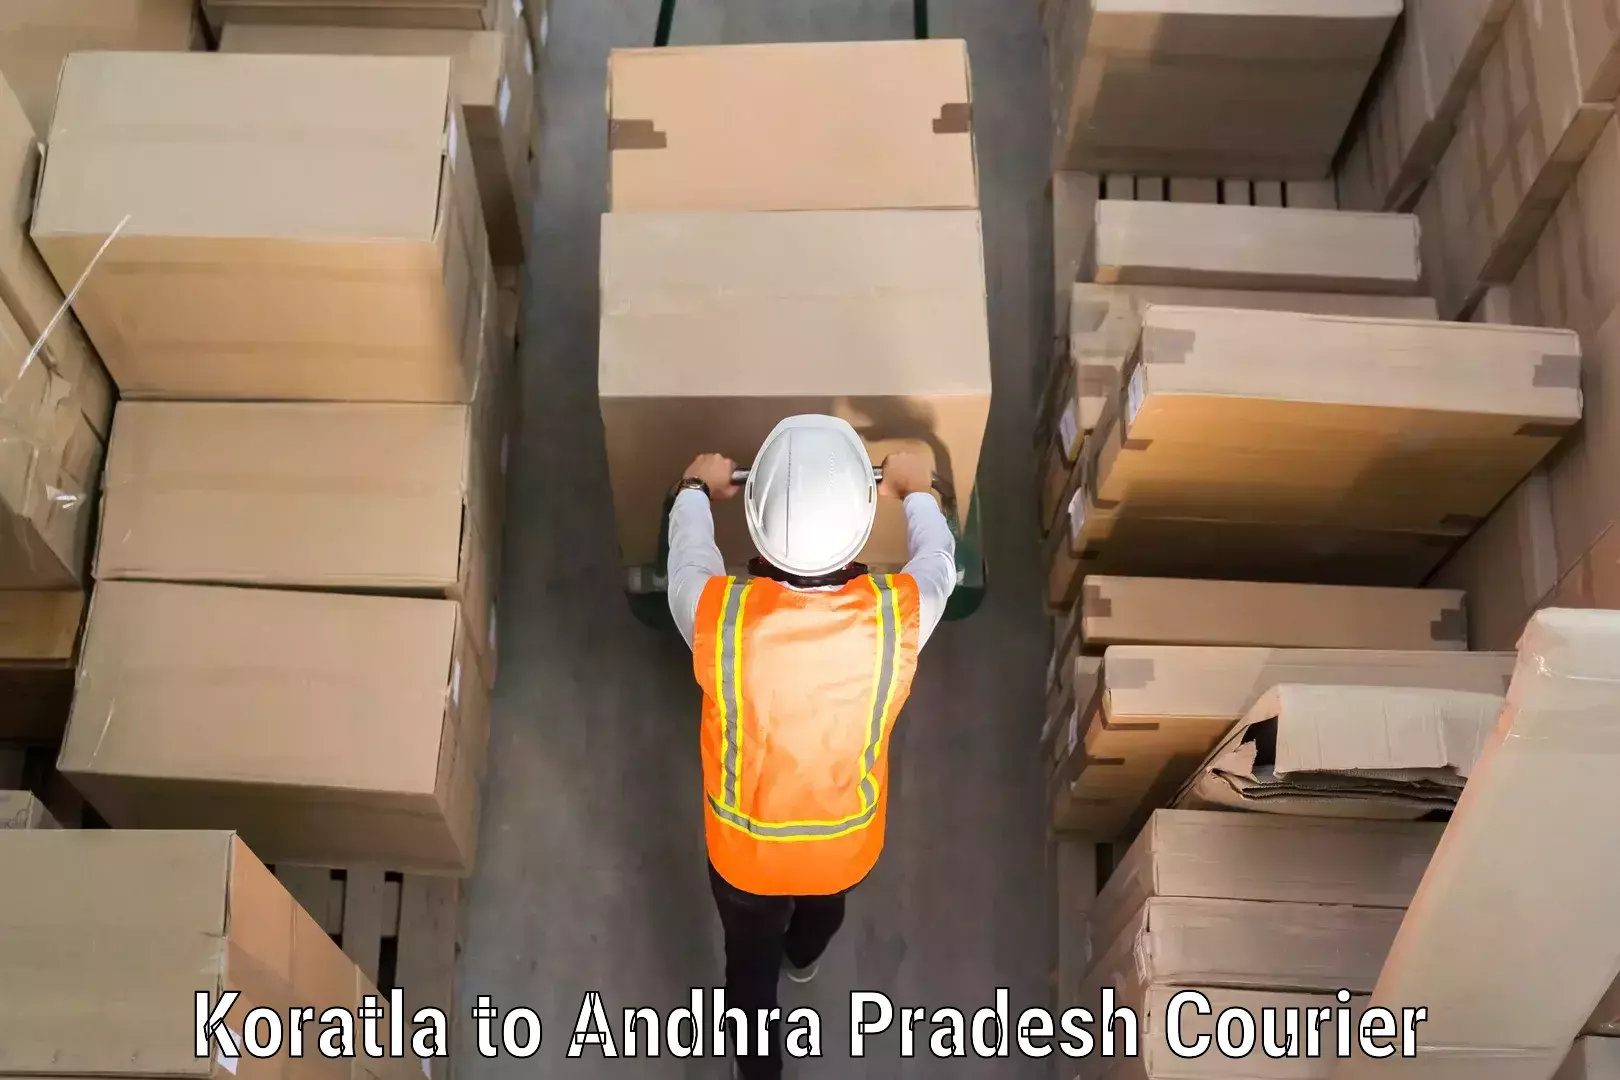 Luggage shipment tracking Koratla to Rajahmundry